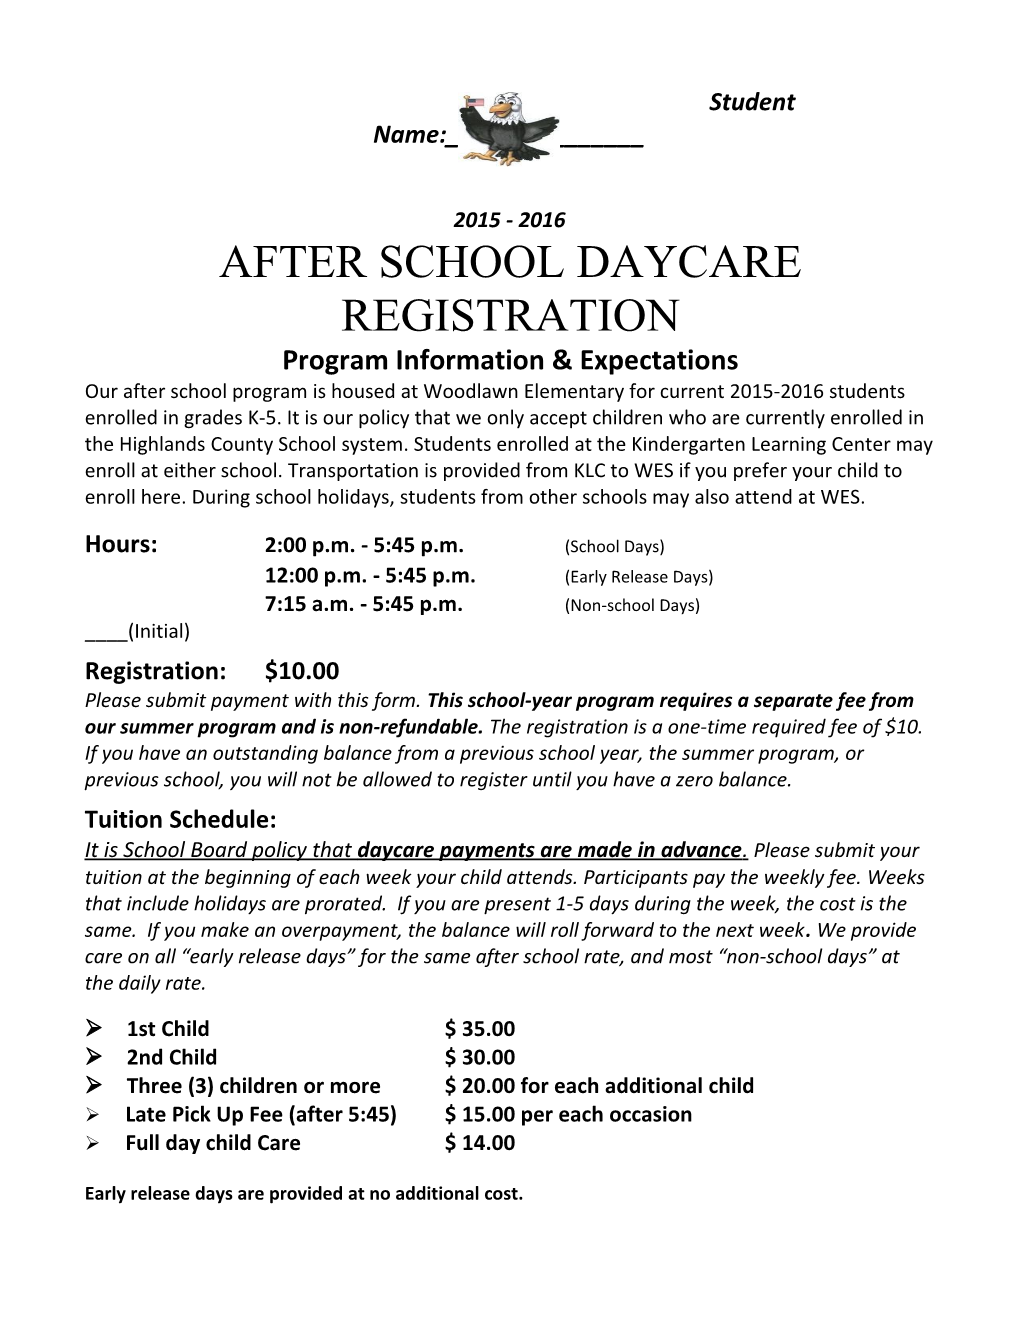 After School Daycare Registration